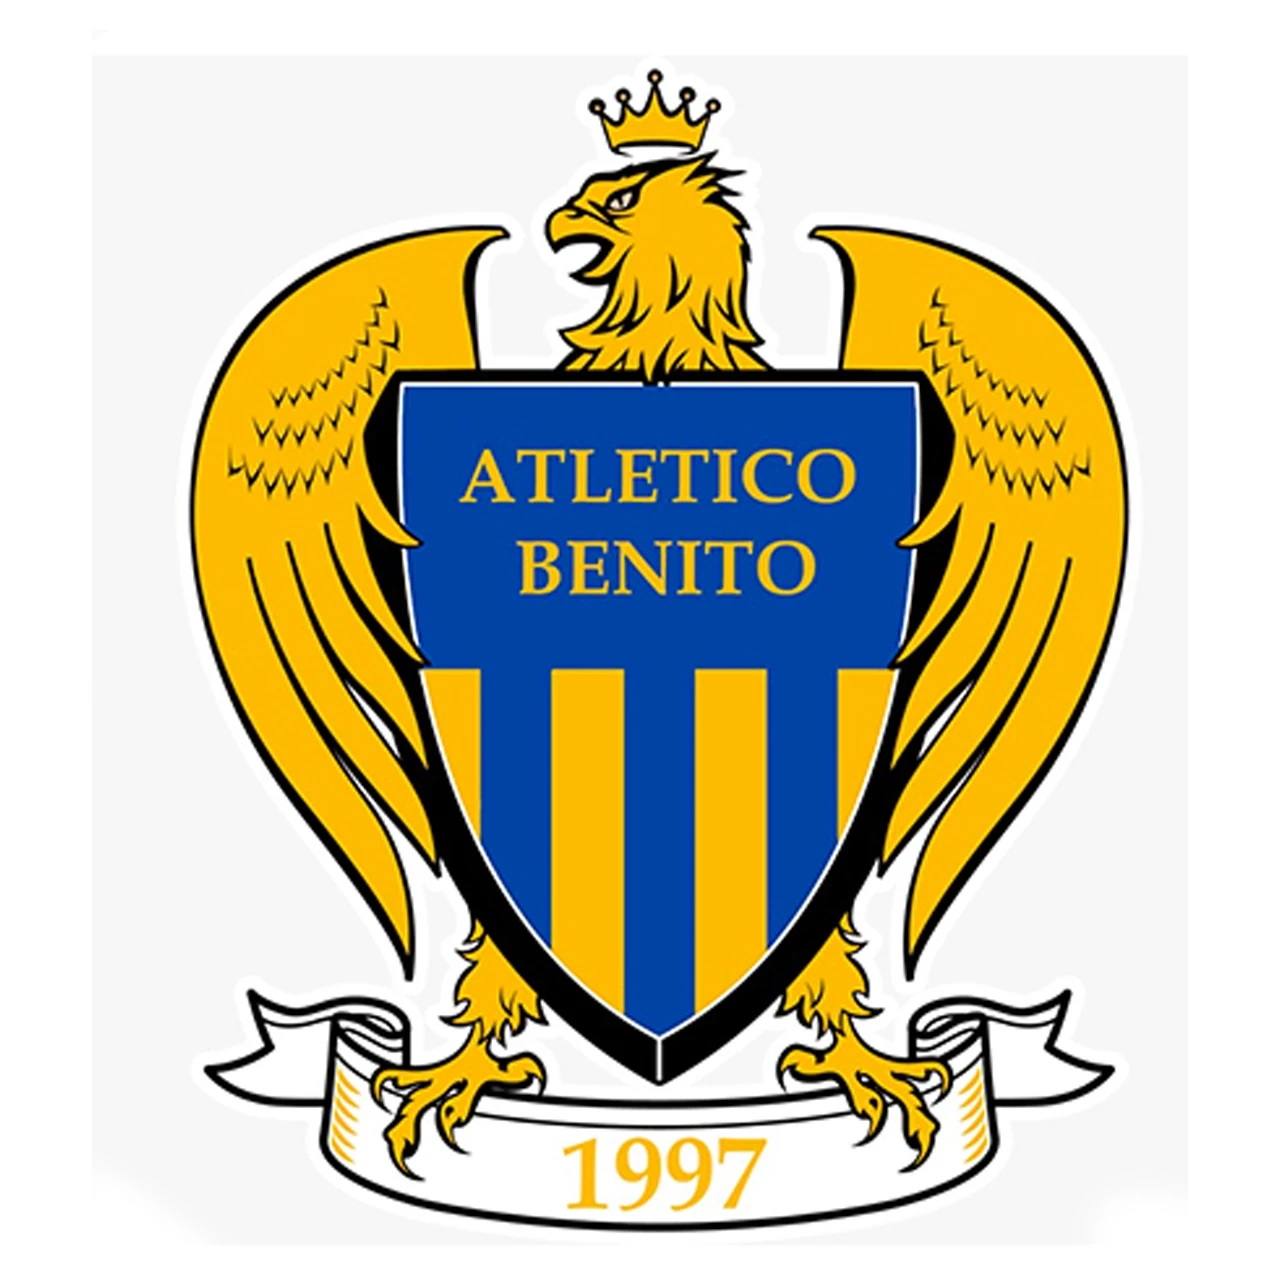 Atletico Benito